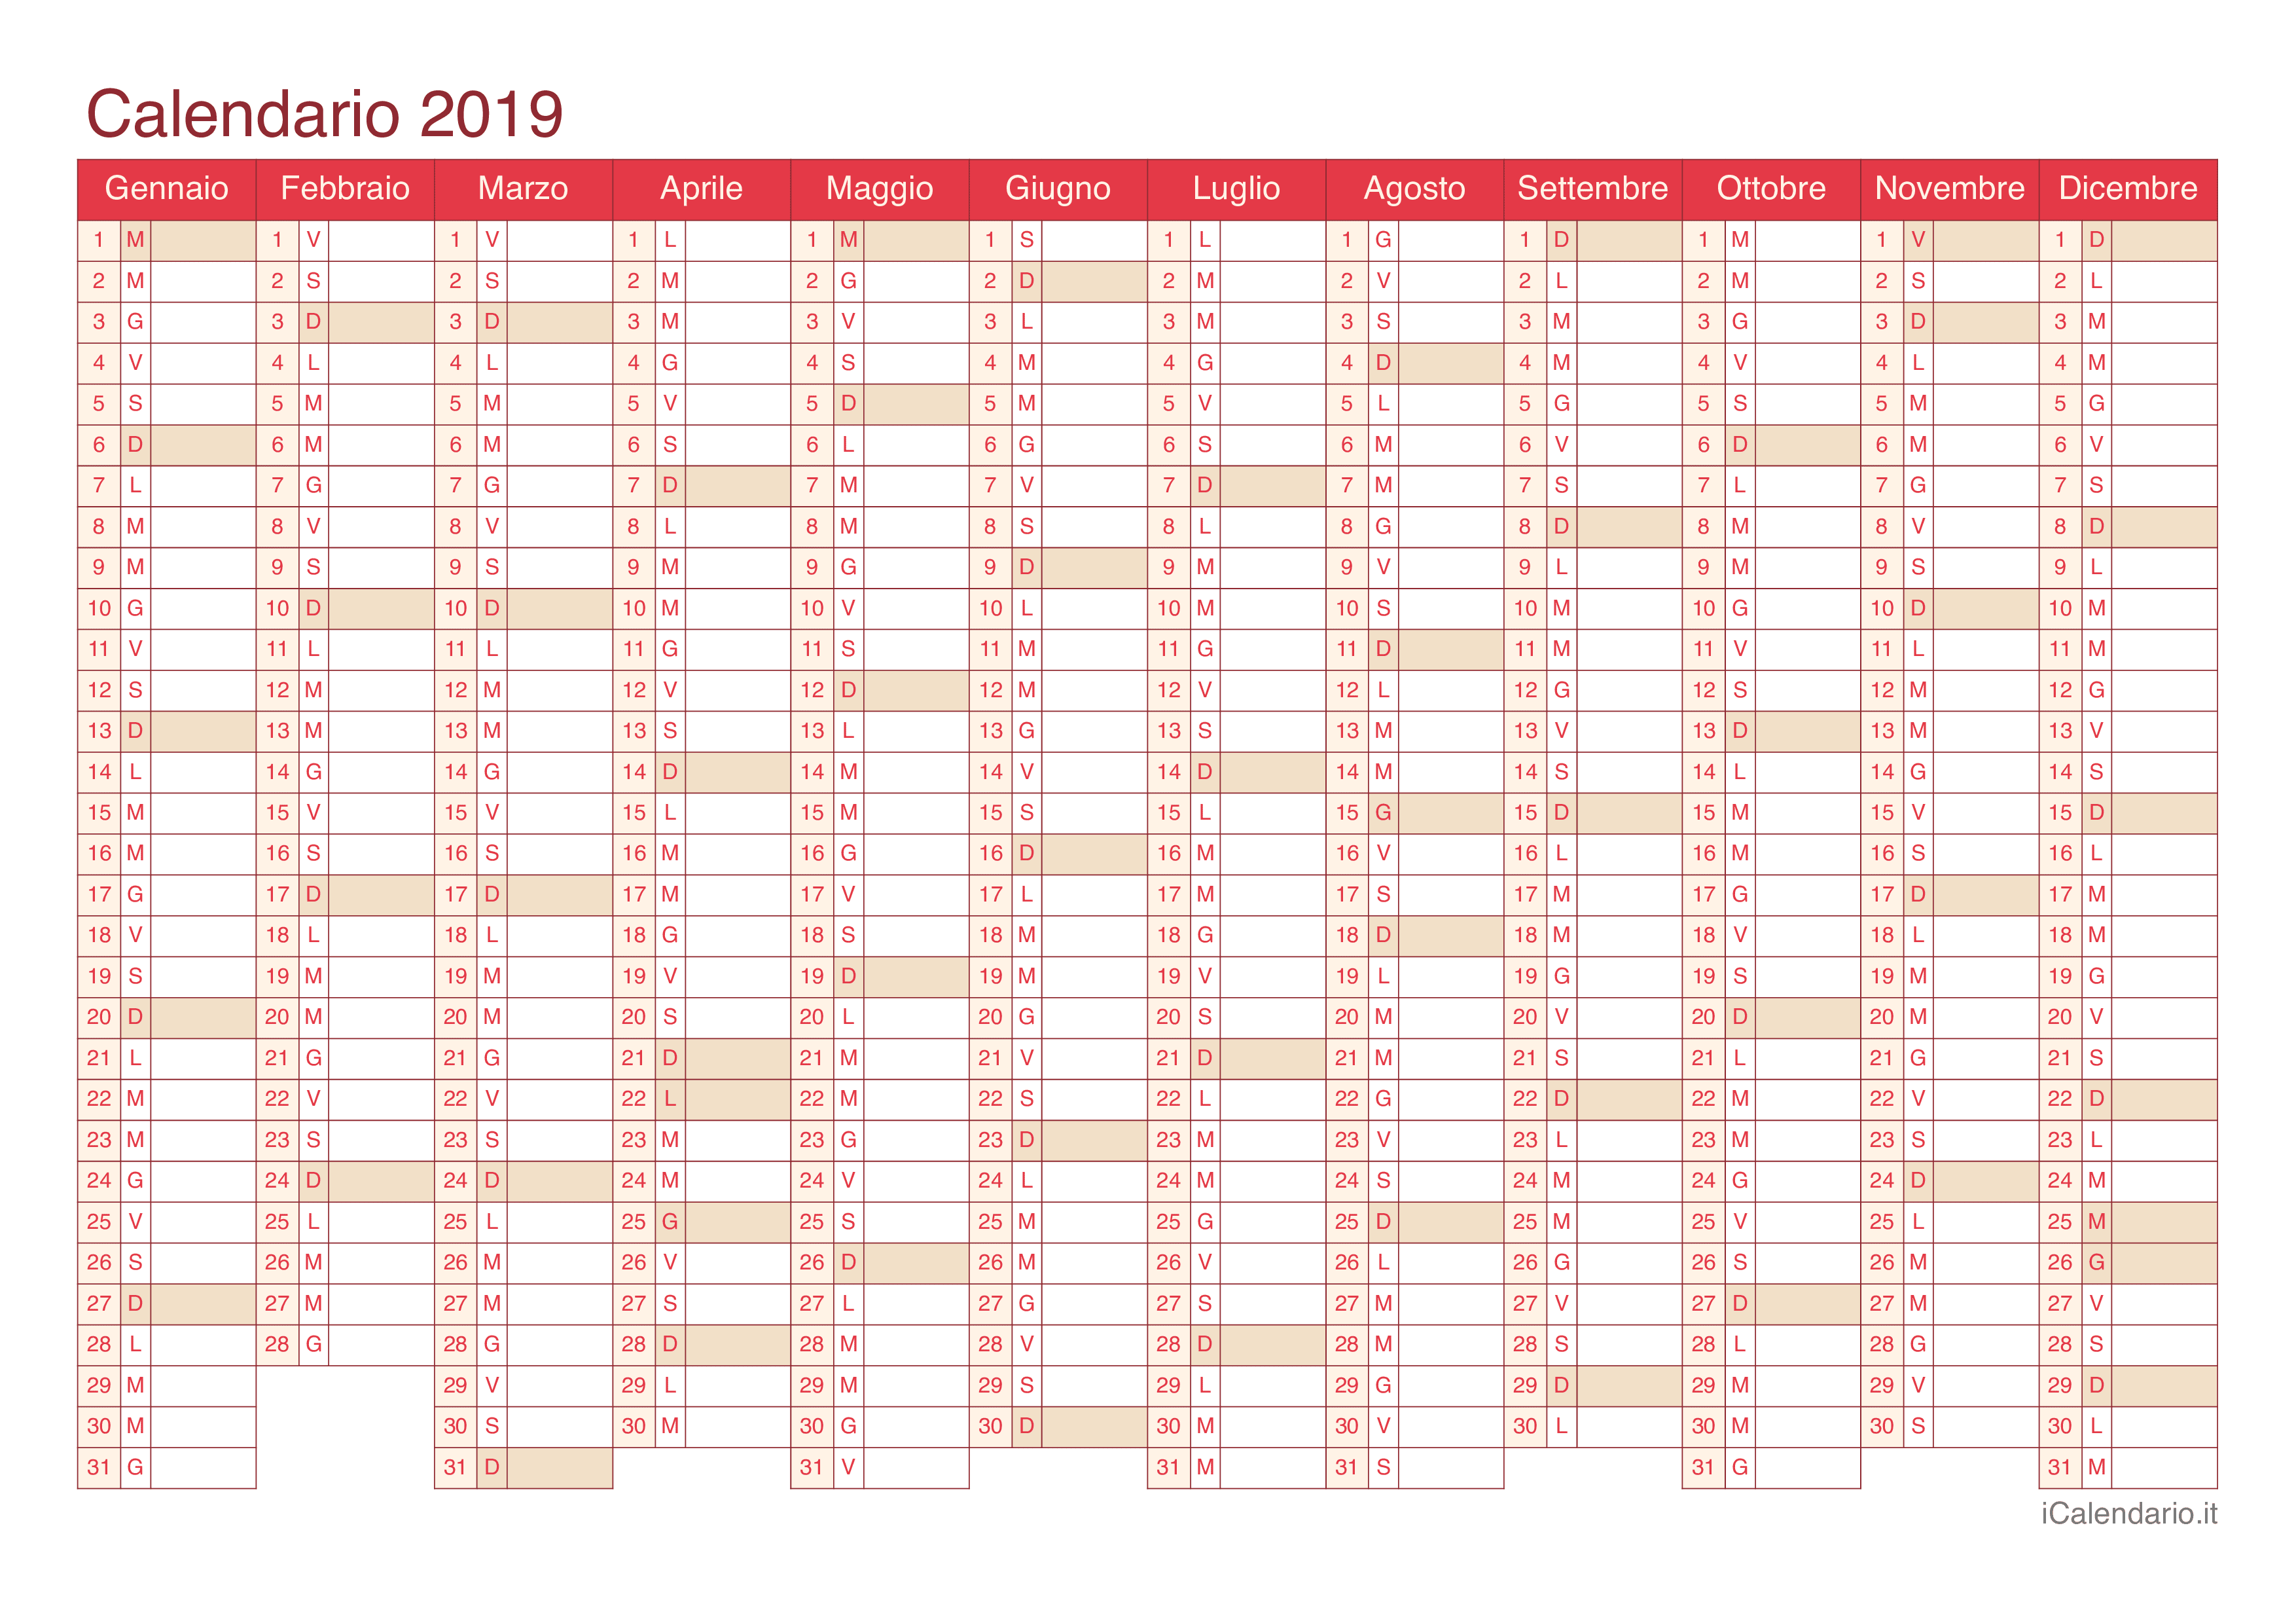 Calendario 2019 - Cherry